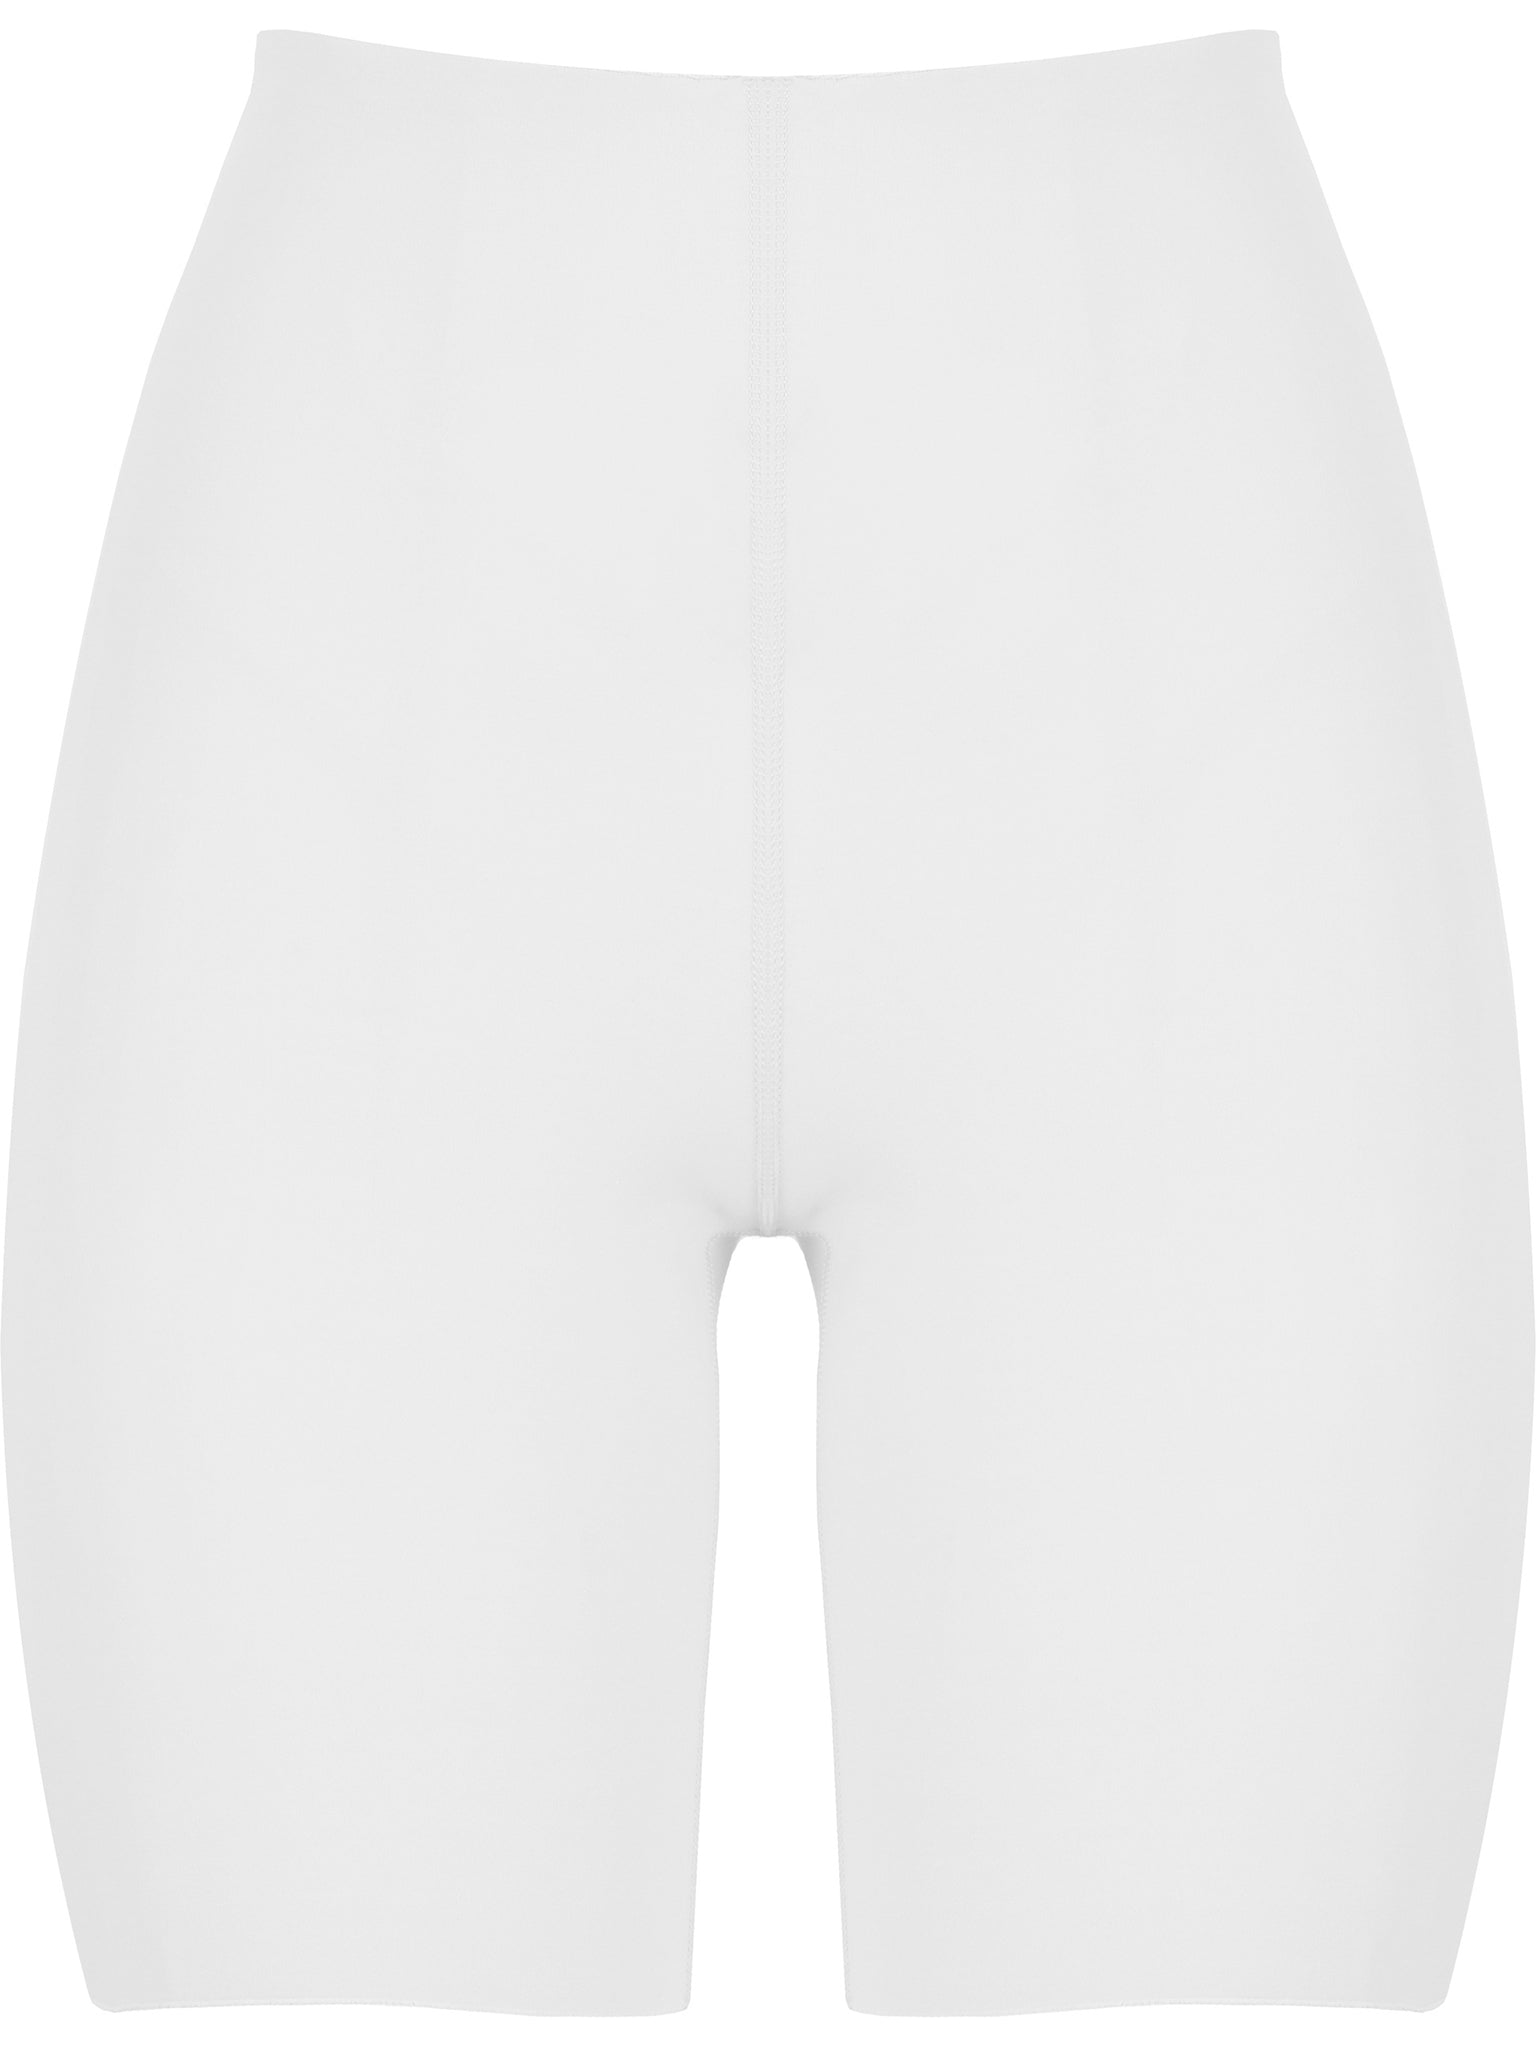 Pantalones cortos de ciclismo (Corte limpio / Cleancut)